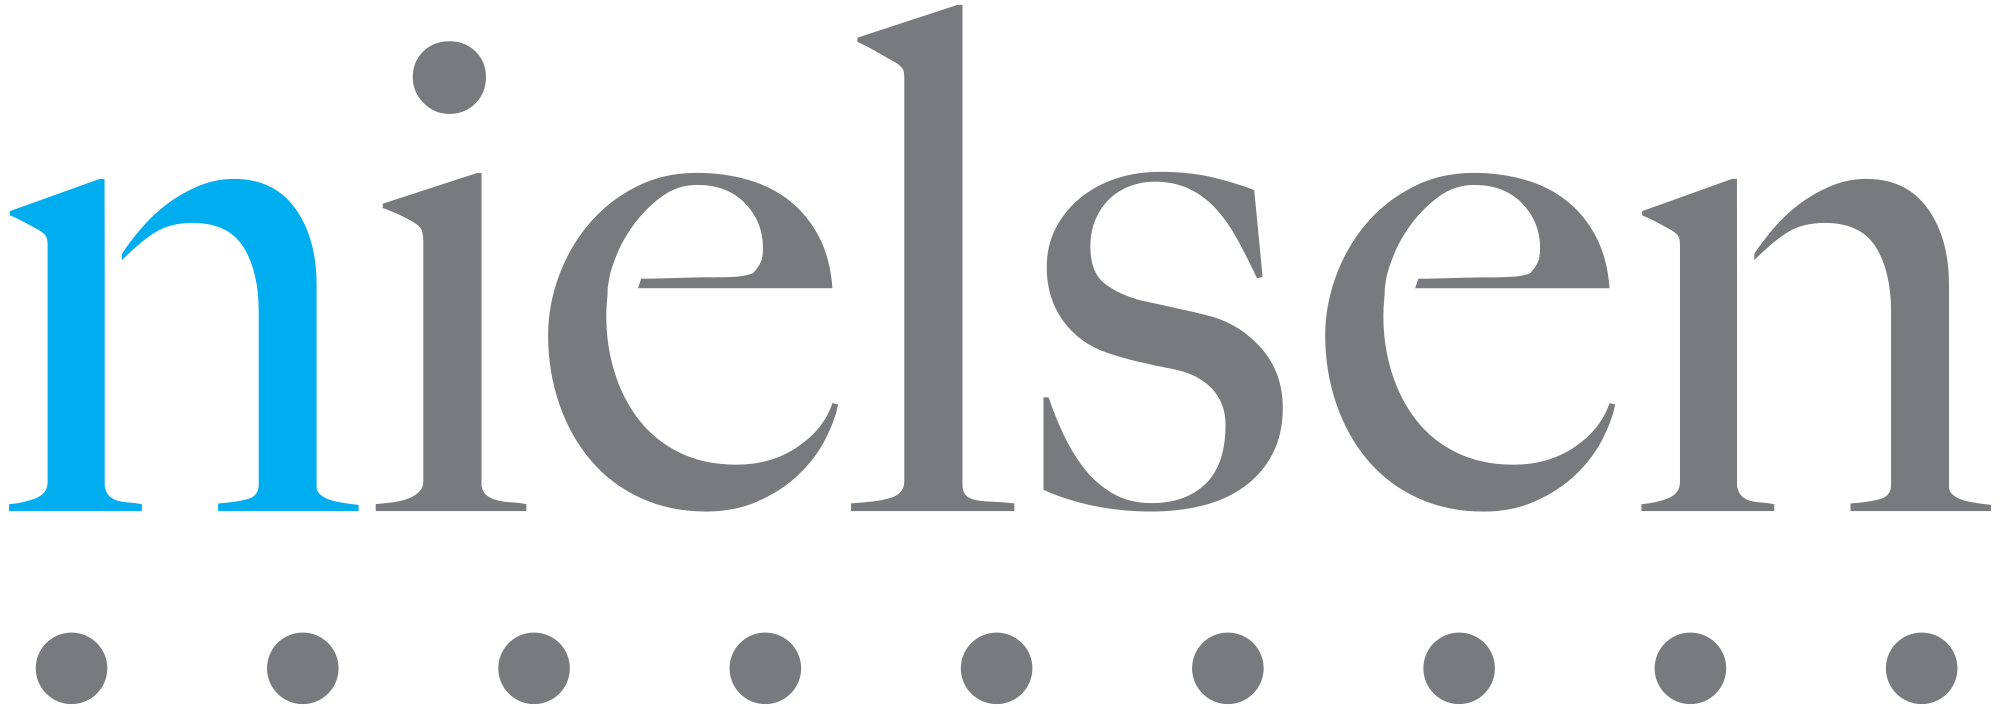 Nielsen_logo.svg.png